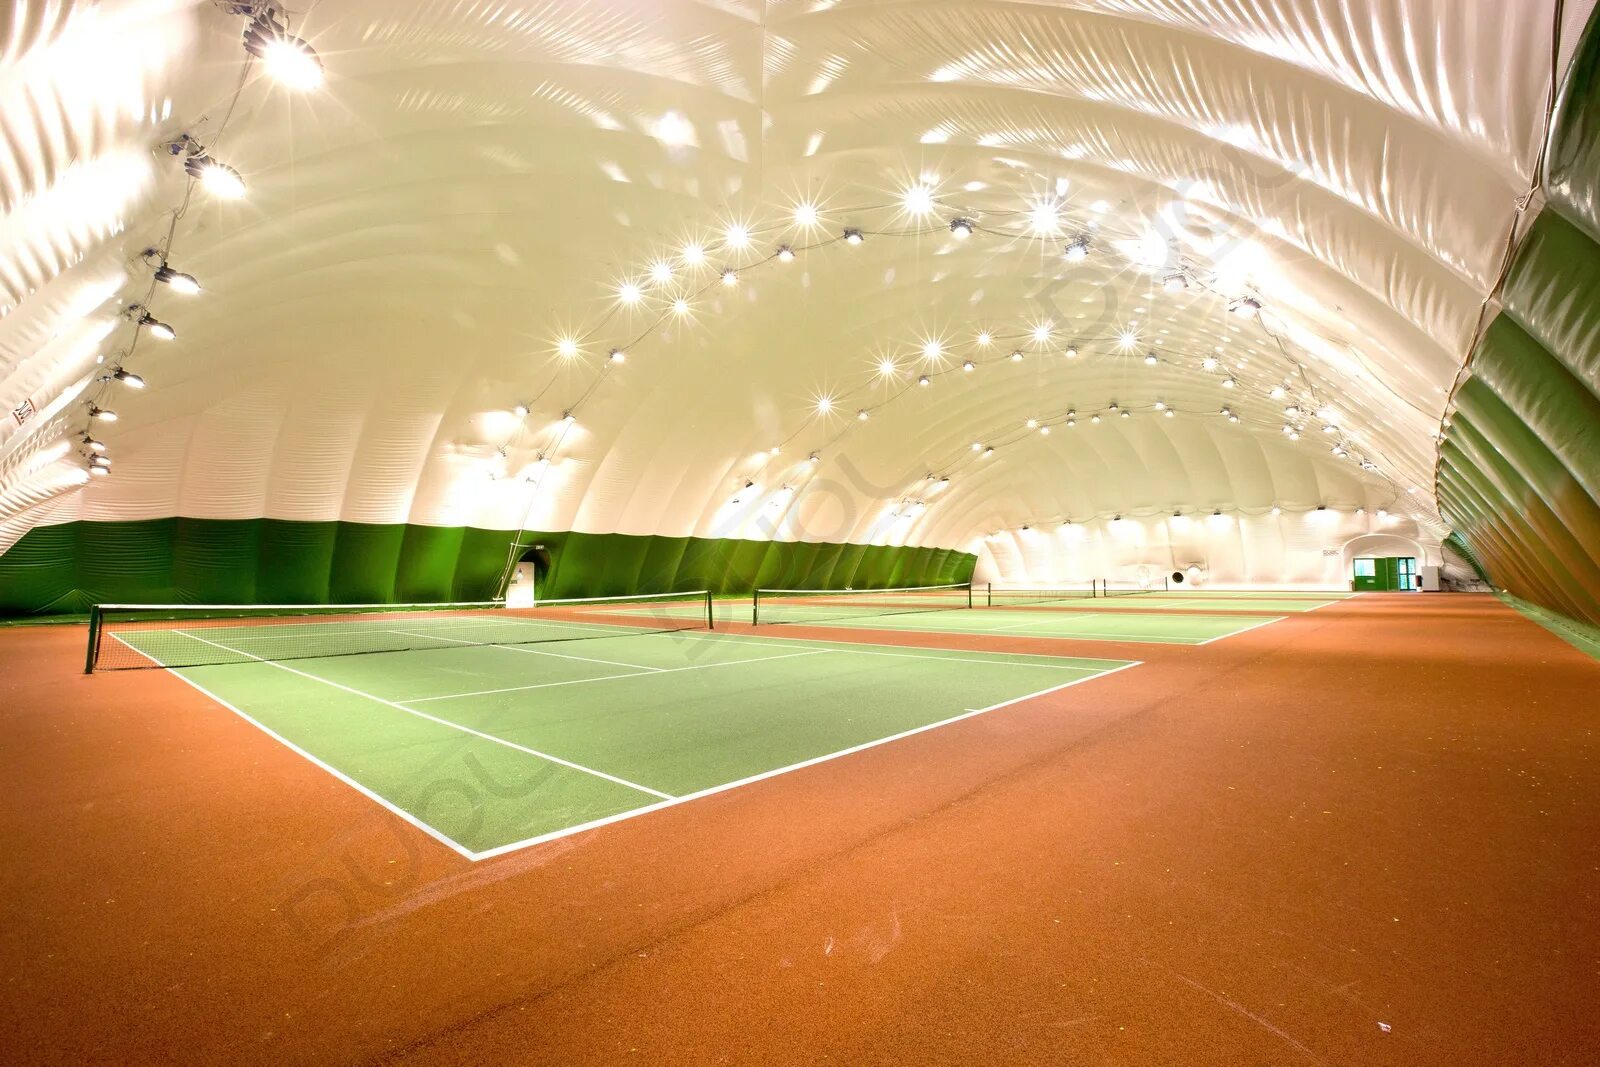 Теннисный корт под. Теннисный корт воздухоопорный. Воздухоопорный футбольный манеж. Воздухоопорные сооружения ФОК. Купол Смоленск теннисный корт.